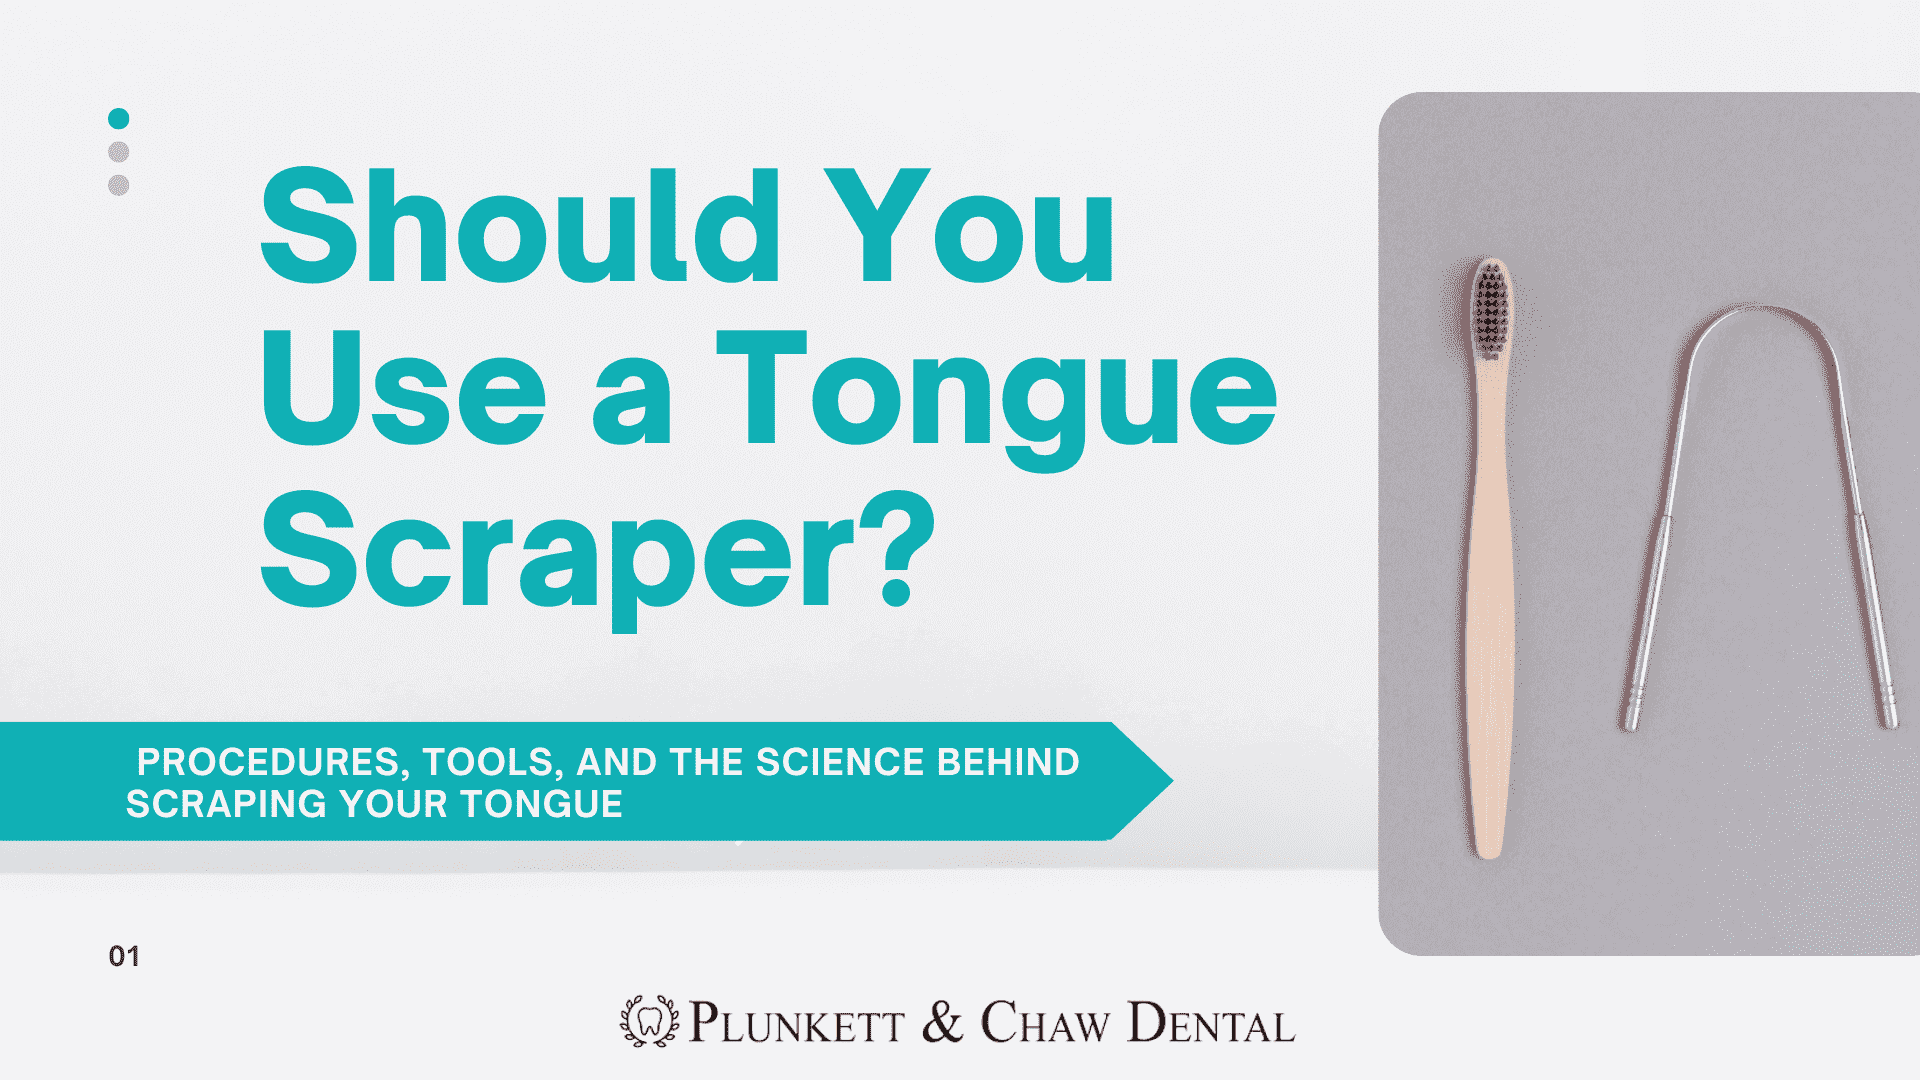 Should You Use a Tongue Scraper?